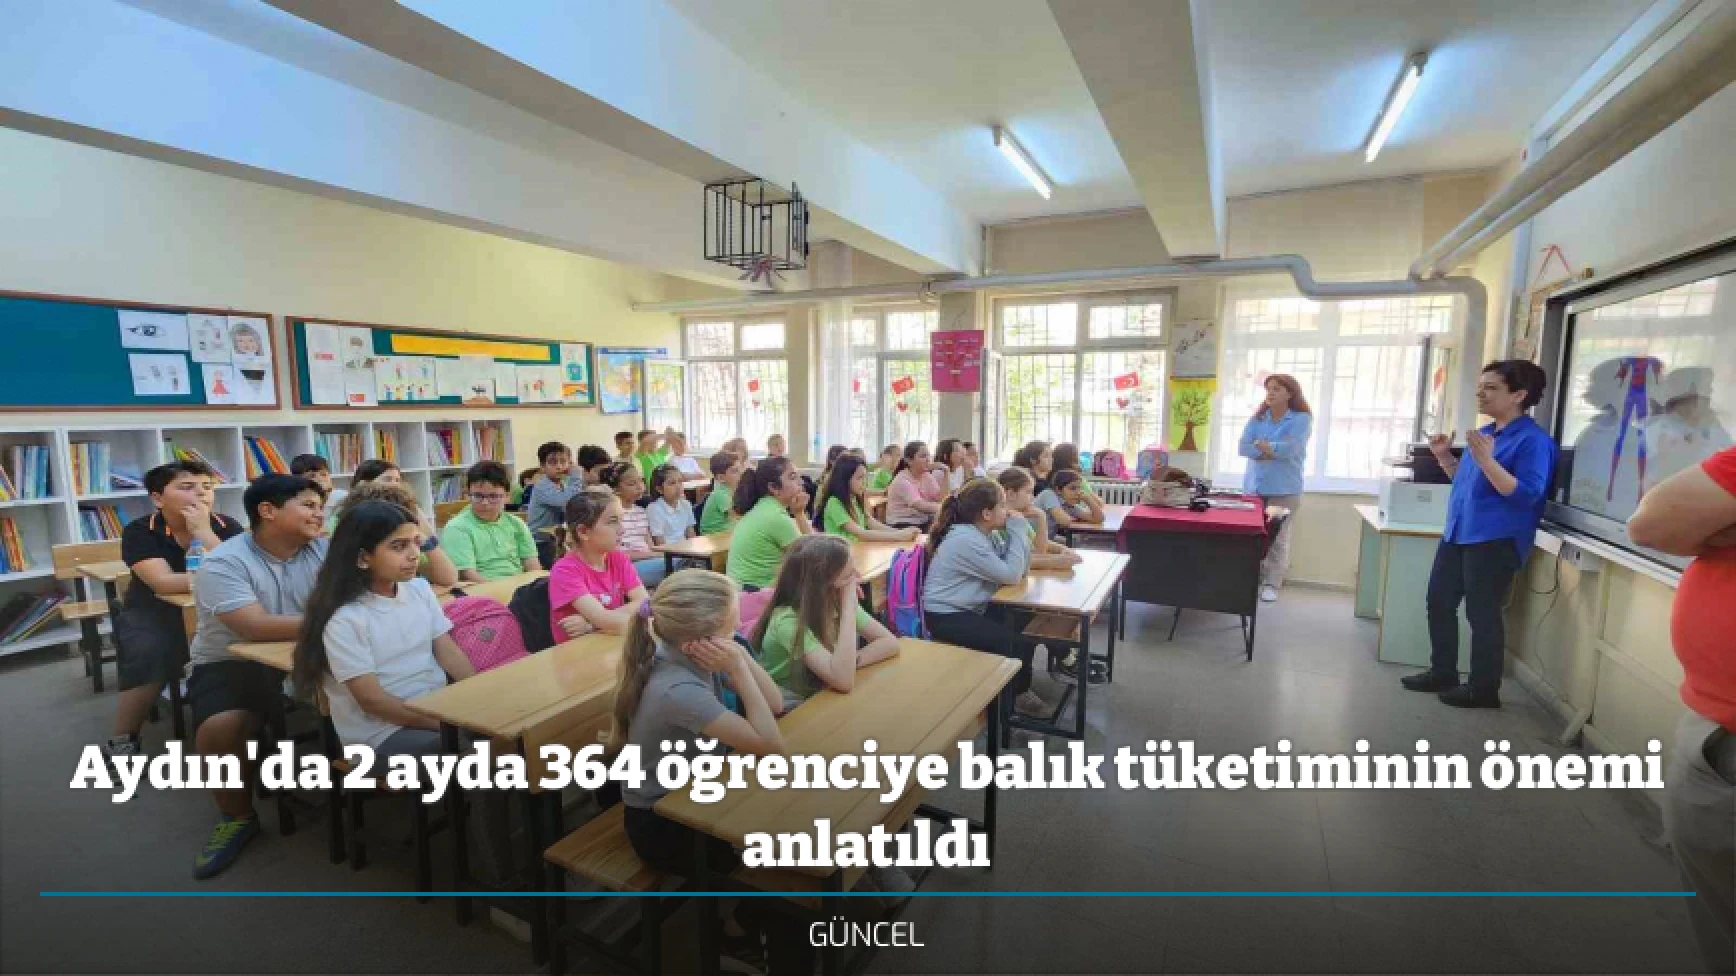 Aydın'da 2 ayda 364 öğrenciye balık tüketiminin önemi anlatıldı